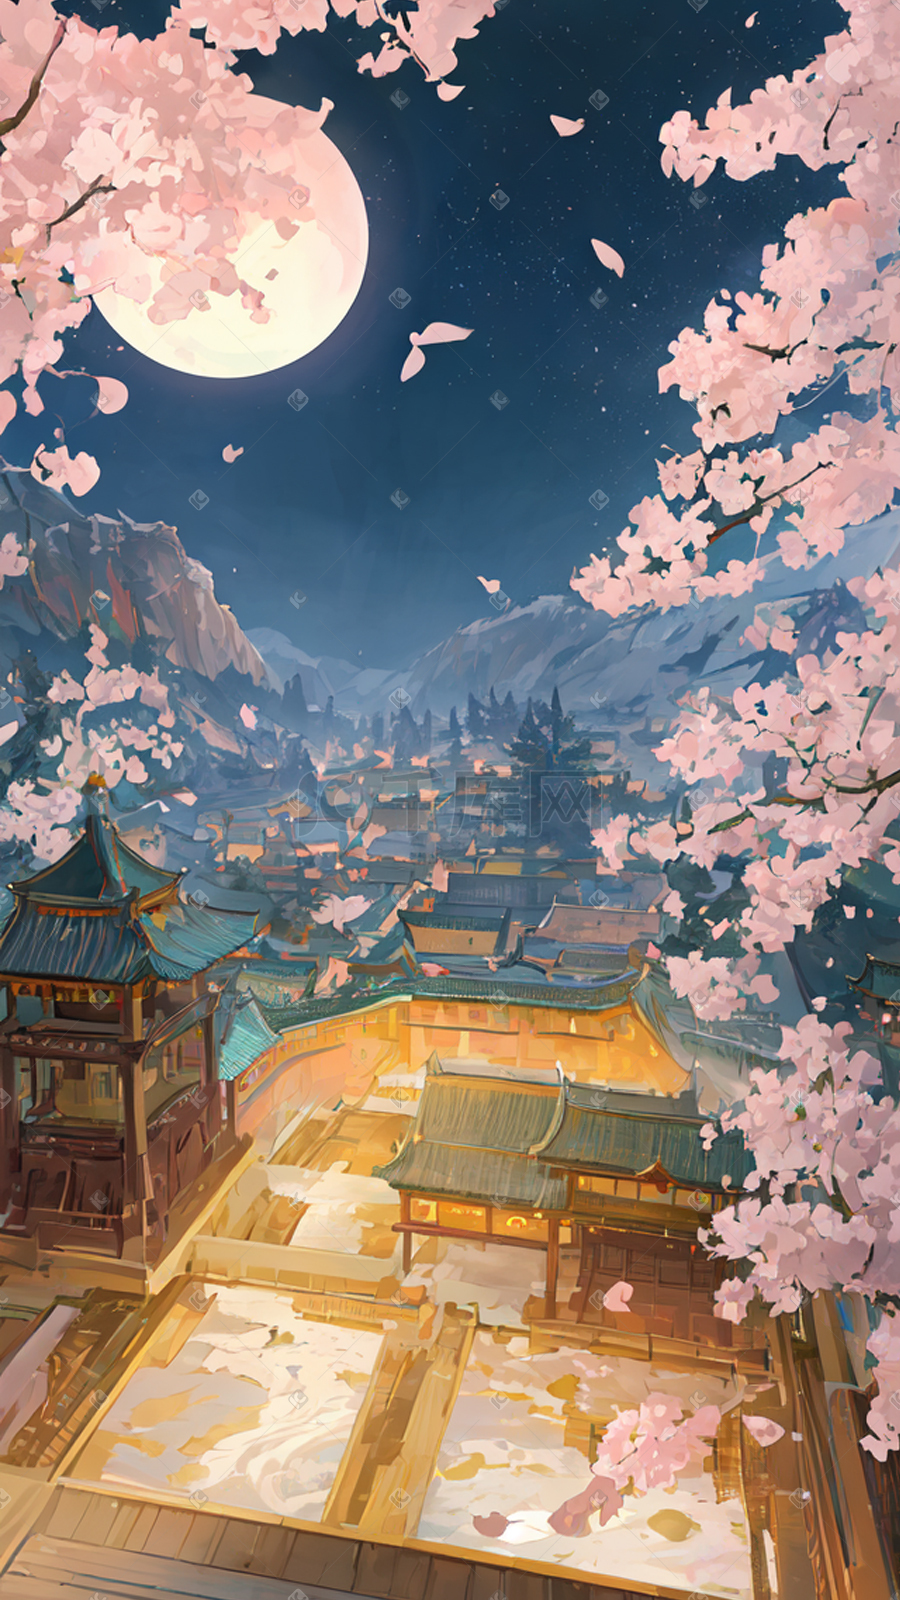 中国风唯美油画古建筑夜景插画图片